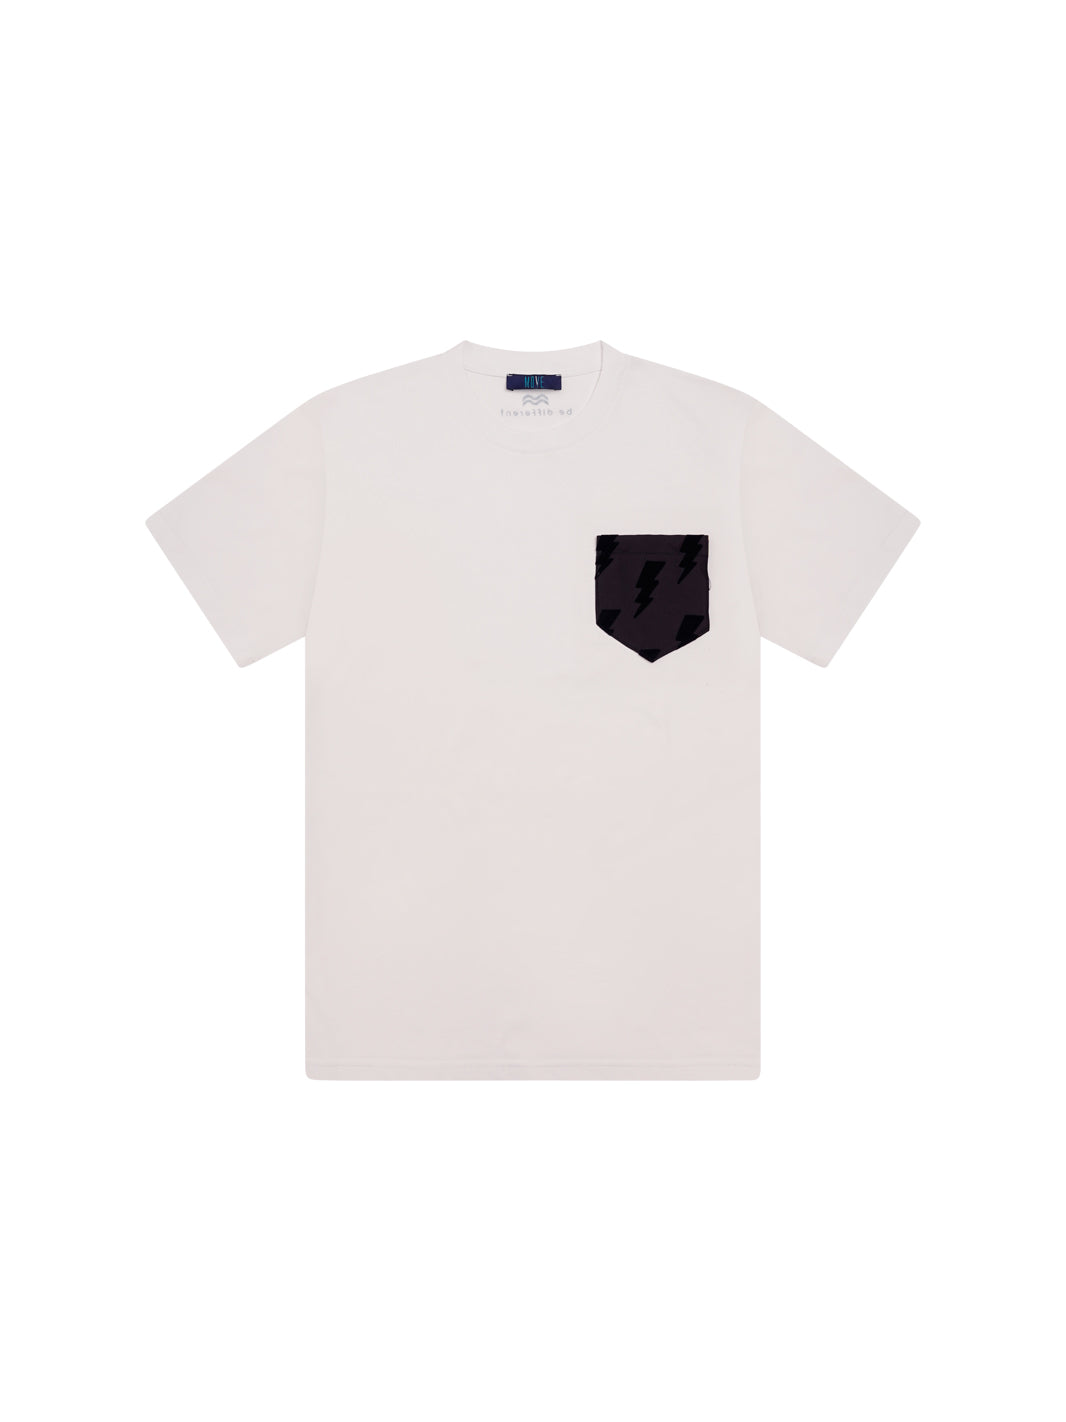 T-shirt bianca taschino flock-TASCA NERA FULMINE. NERO